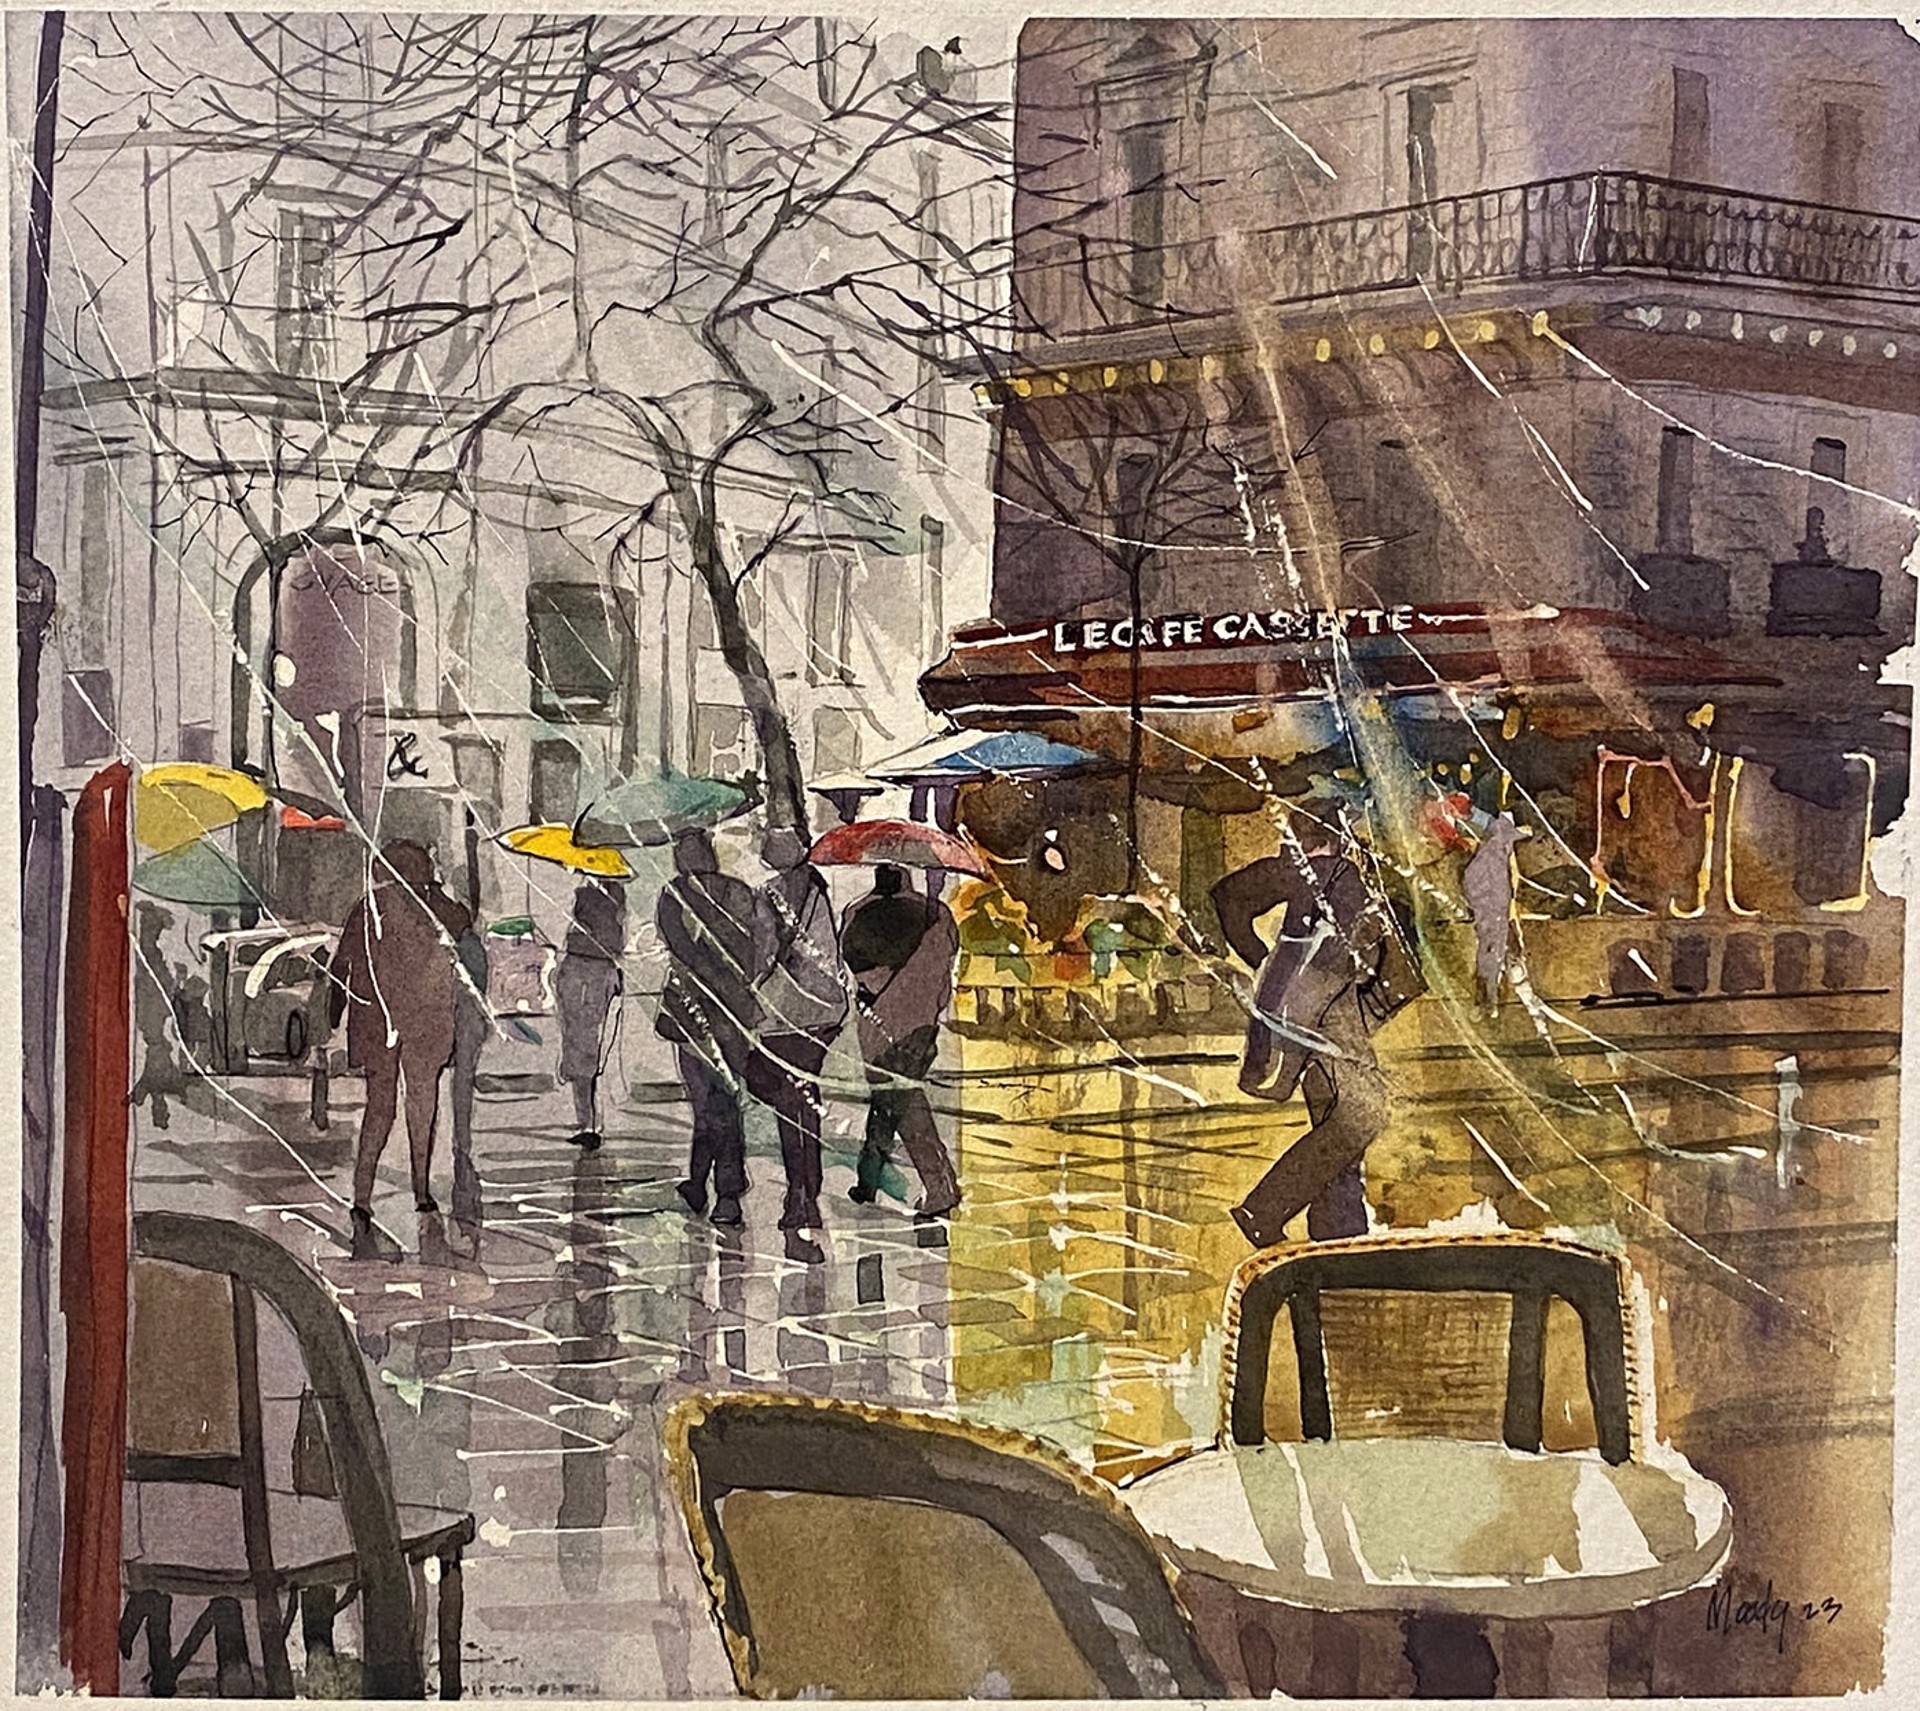 La Cafe Cassette, Paris by Bob Moody